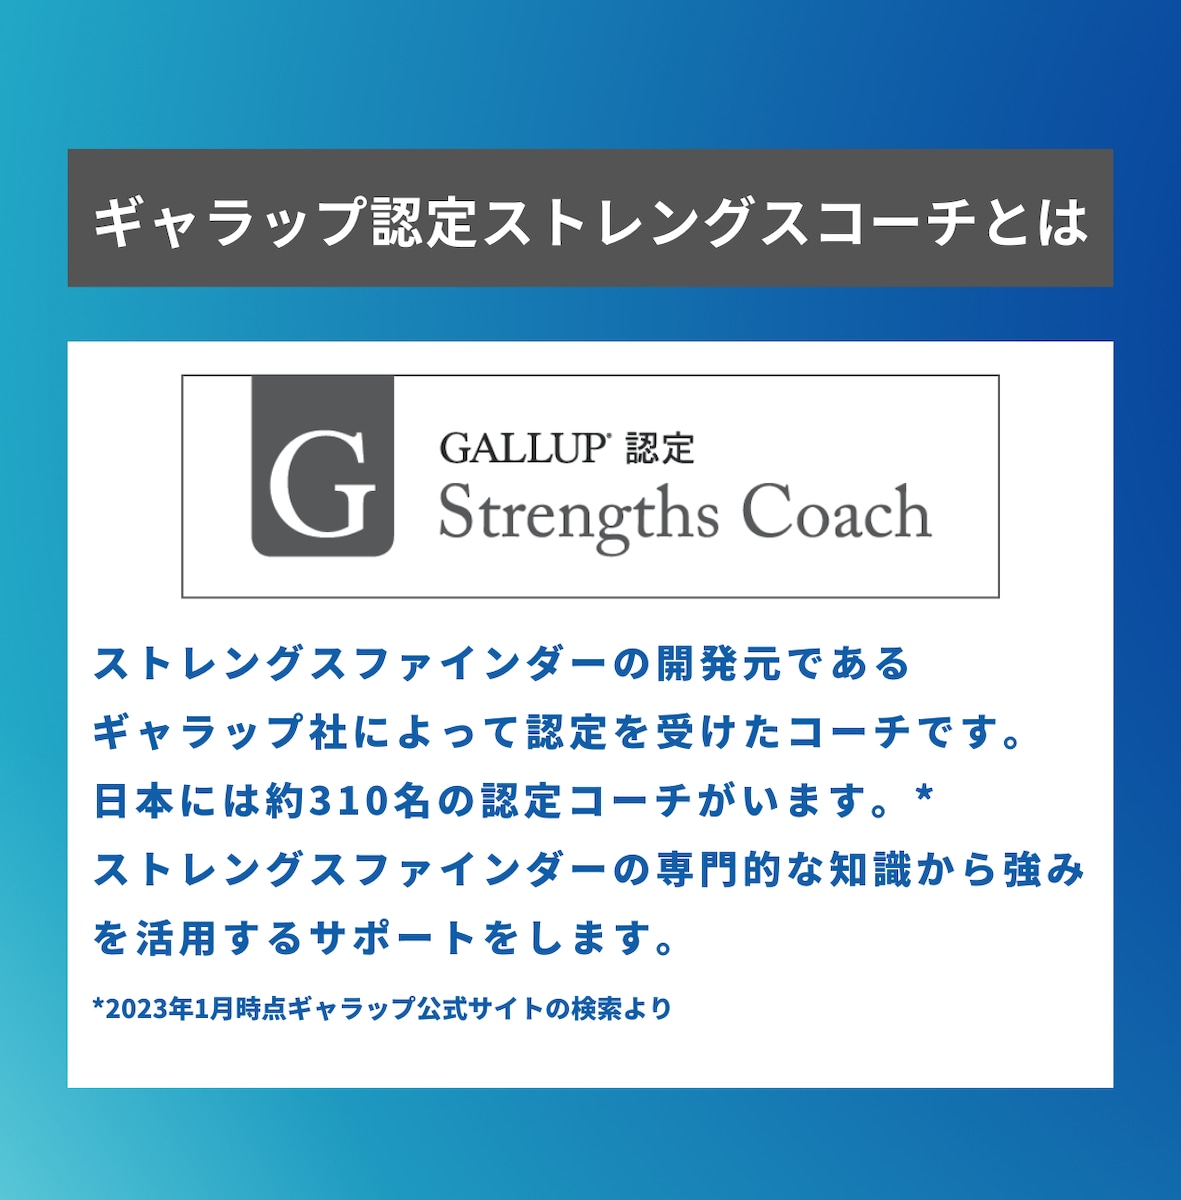 Gallup認定ストレングスコーチ